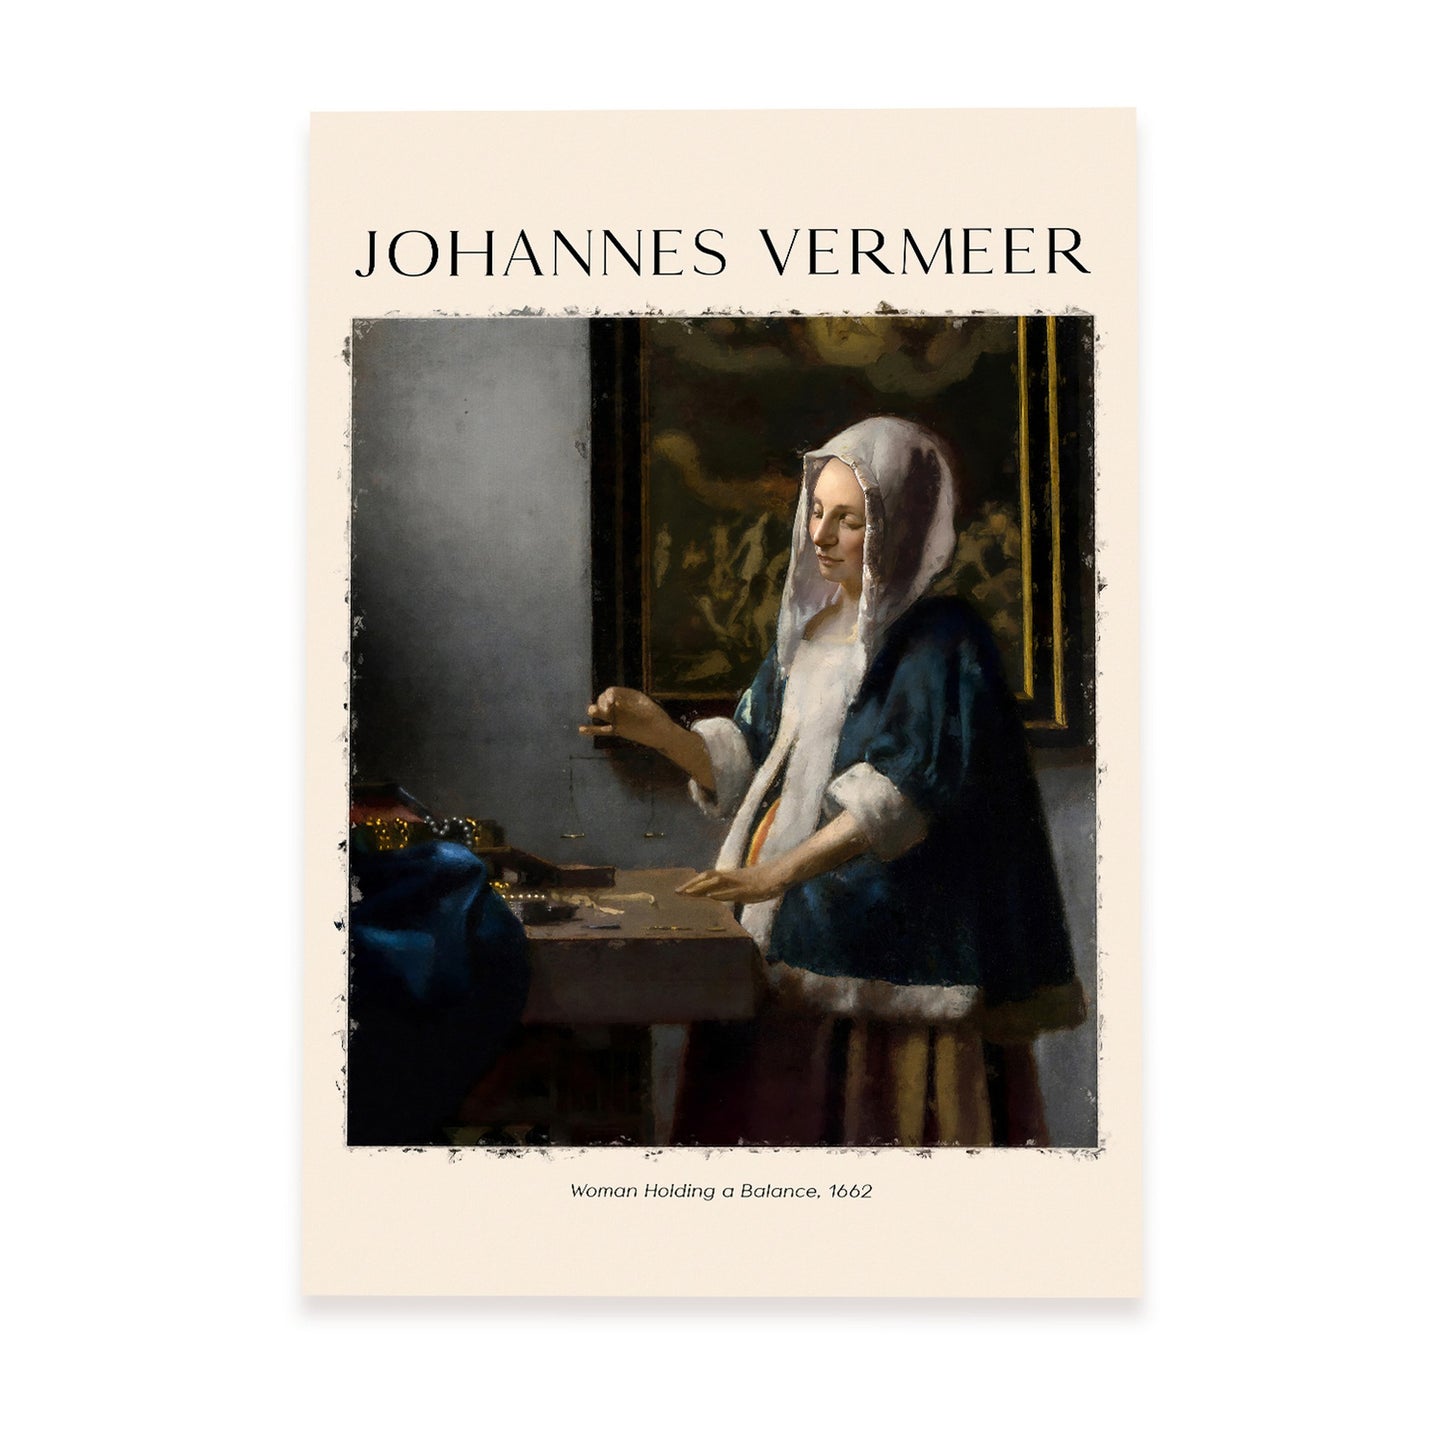 Lámina de Mujer con Equilibrio inspirada en Johannes Vermeer